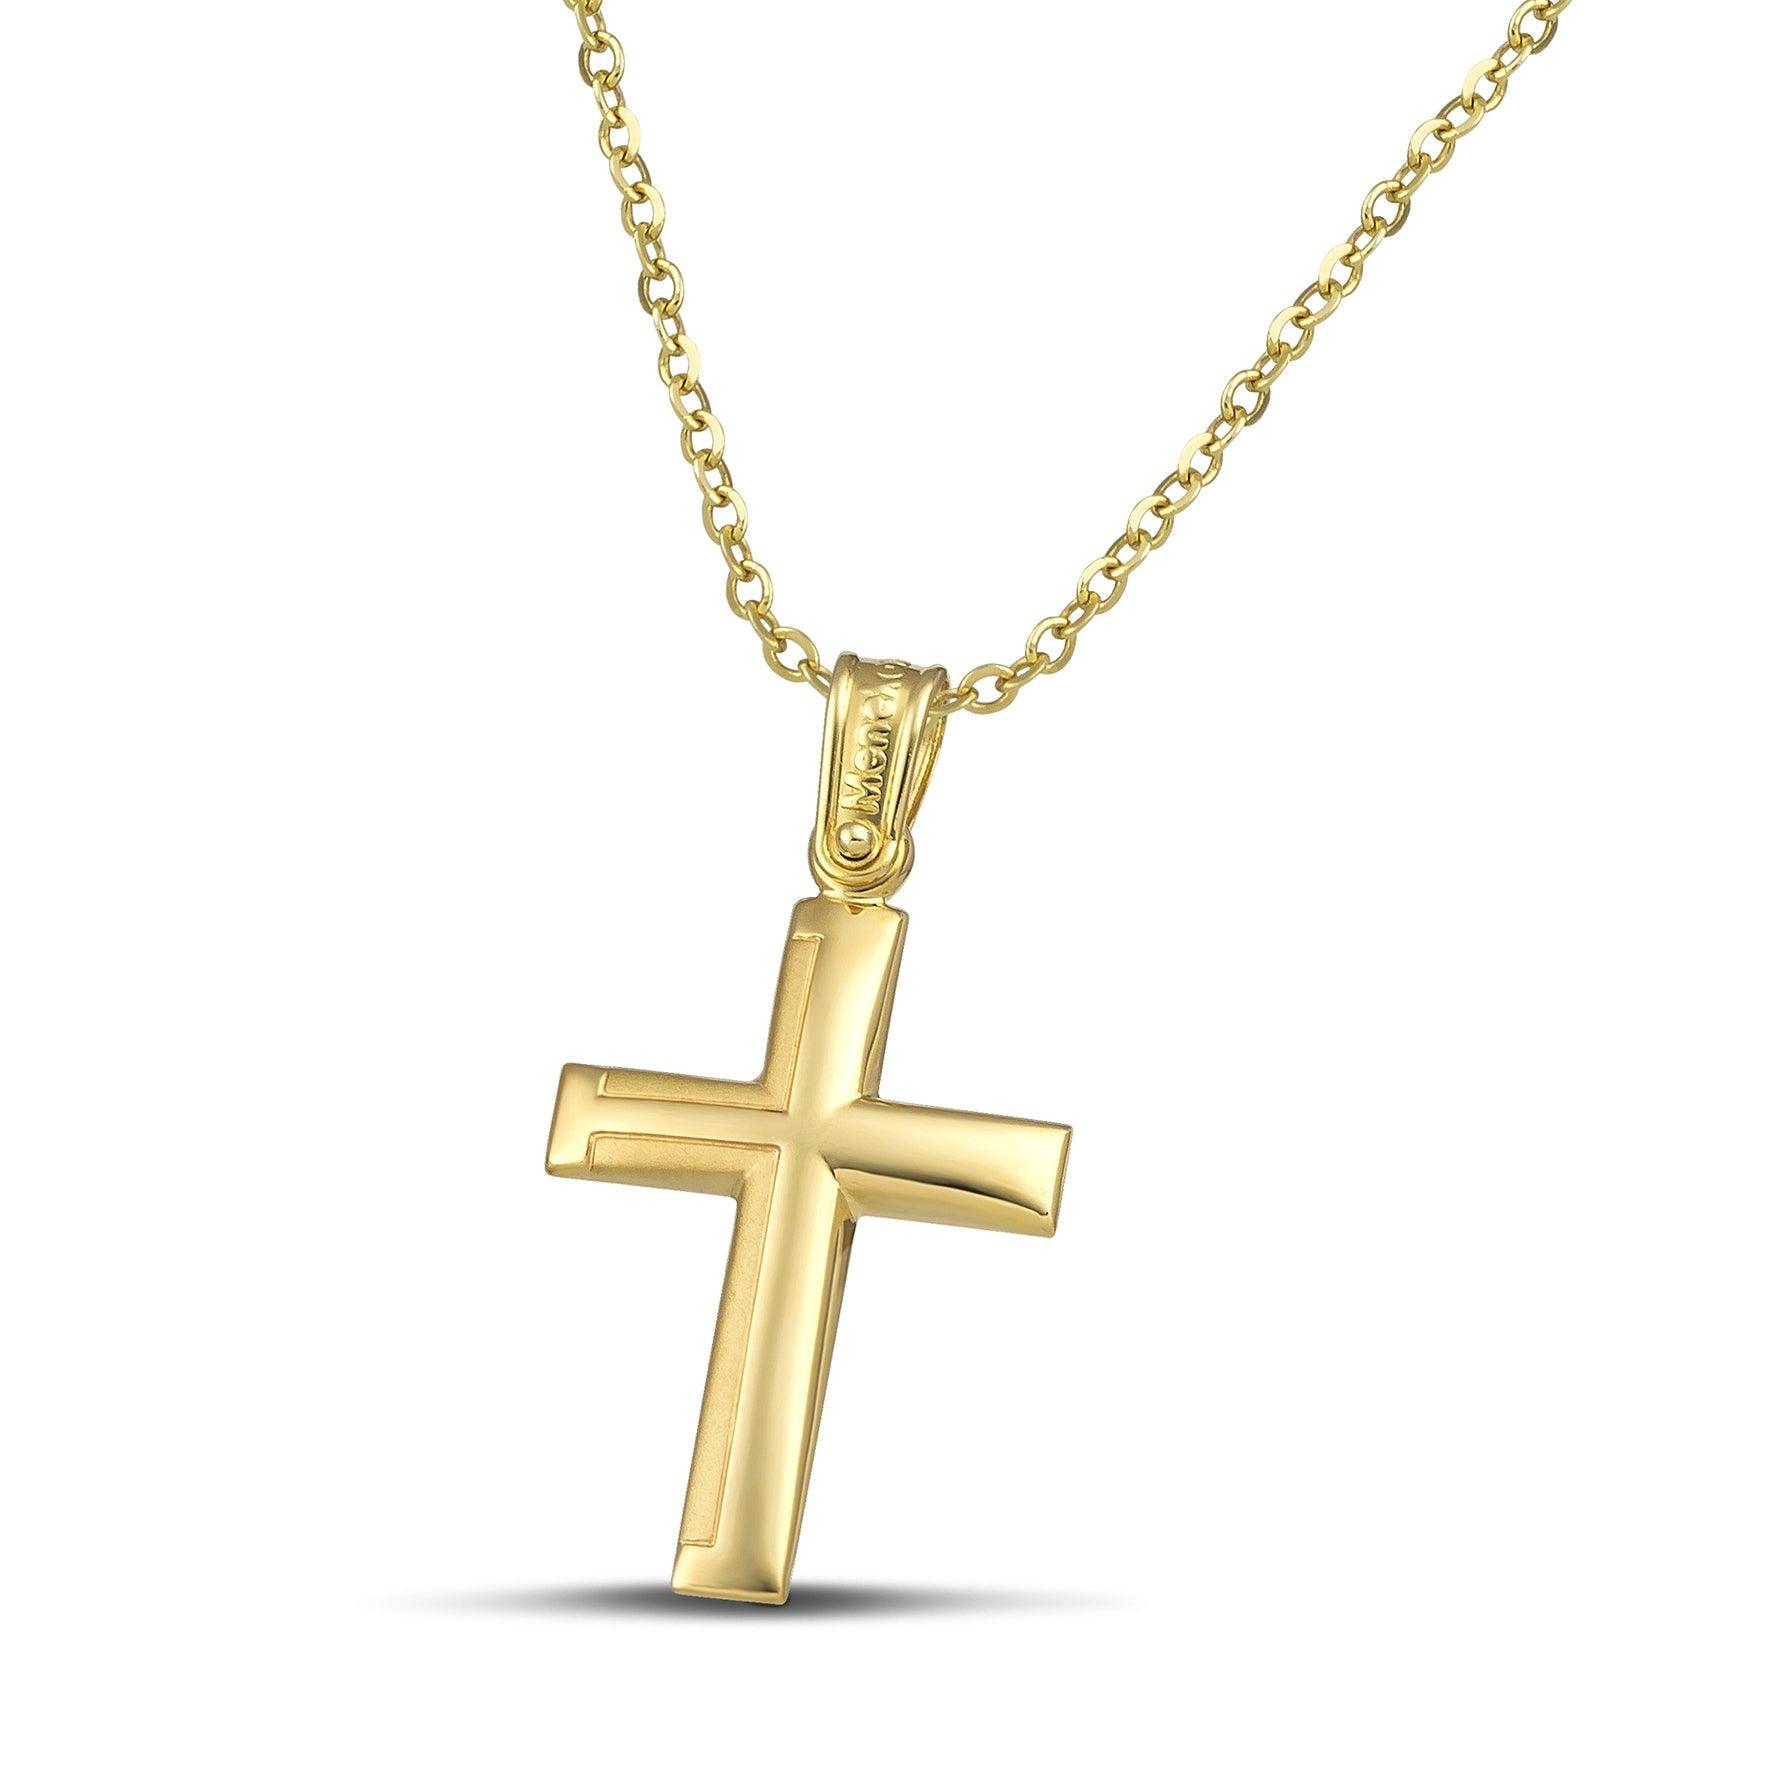 Ανδρικός σταυρός από χρυσό Κ14 με ματ. Χειροποίητο κόσμημα με λεπτή αλυσίδα με κρίκους.